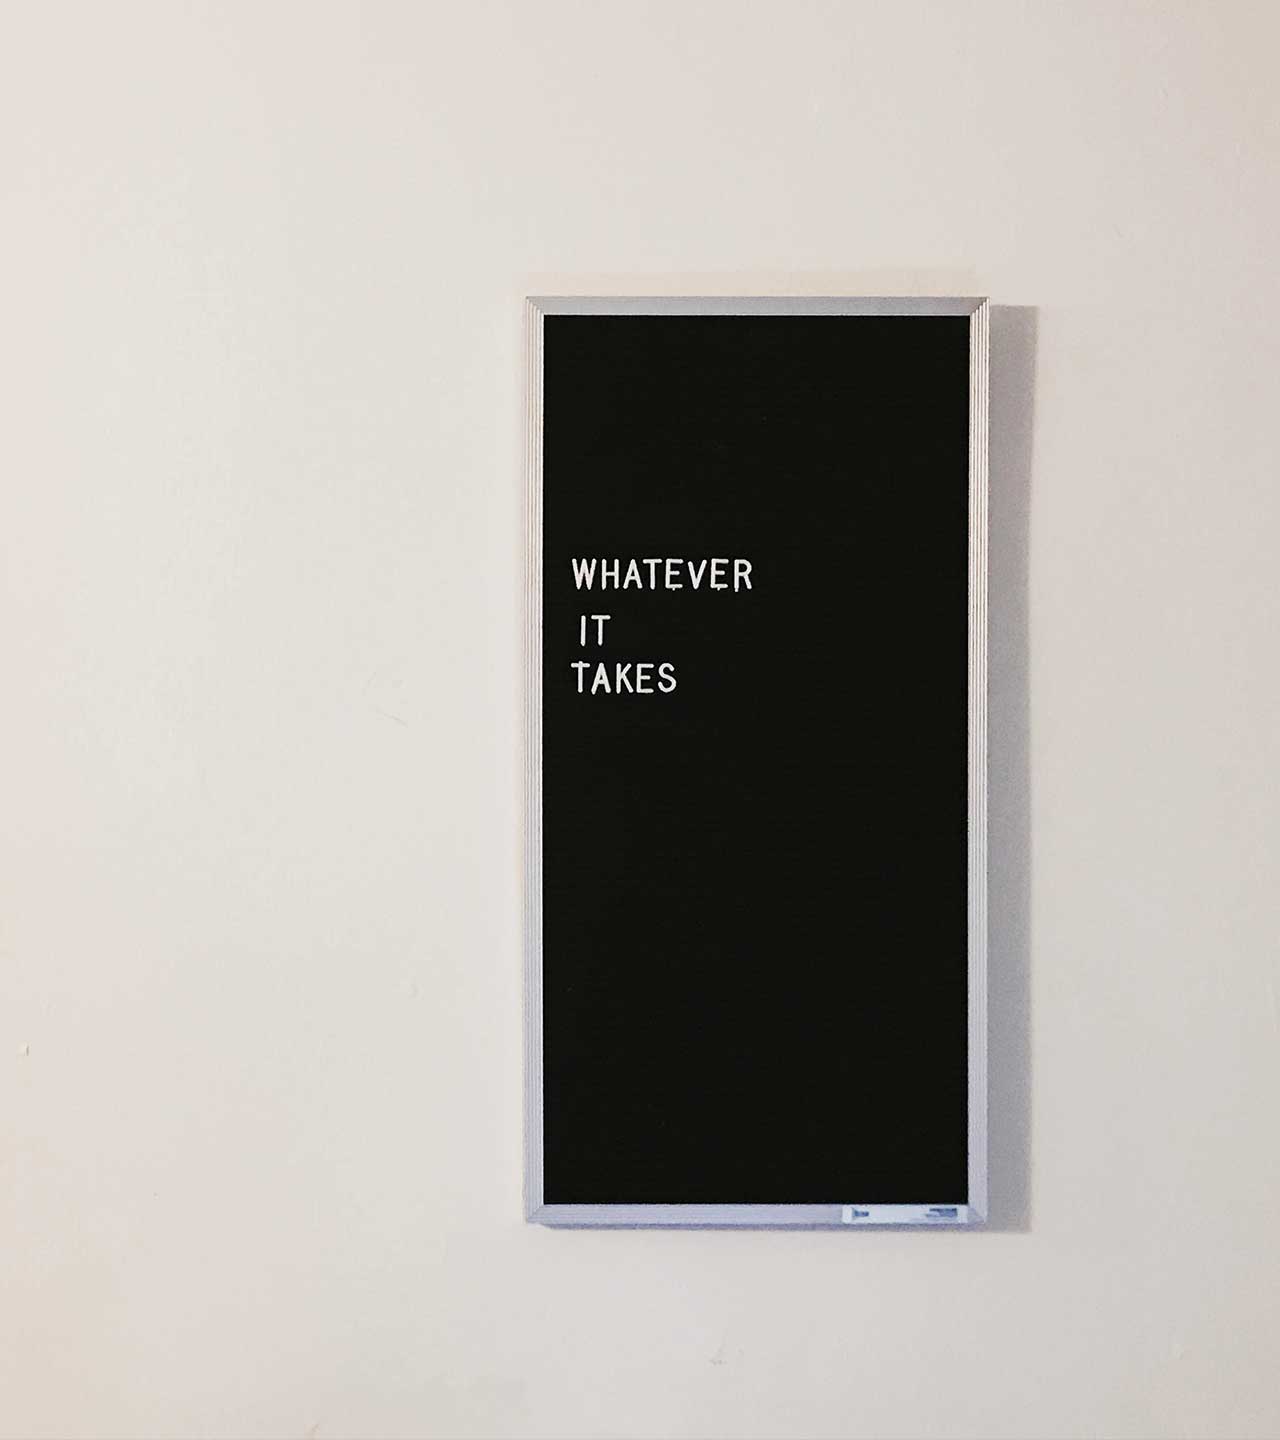 schwarzes Bild mit weißer Schrift "whatever it takes"